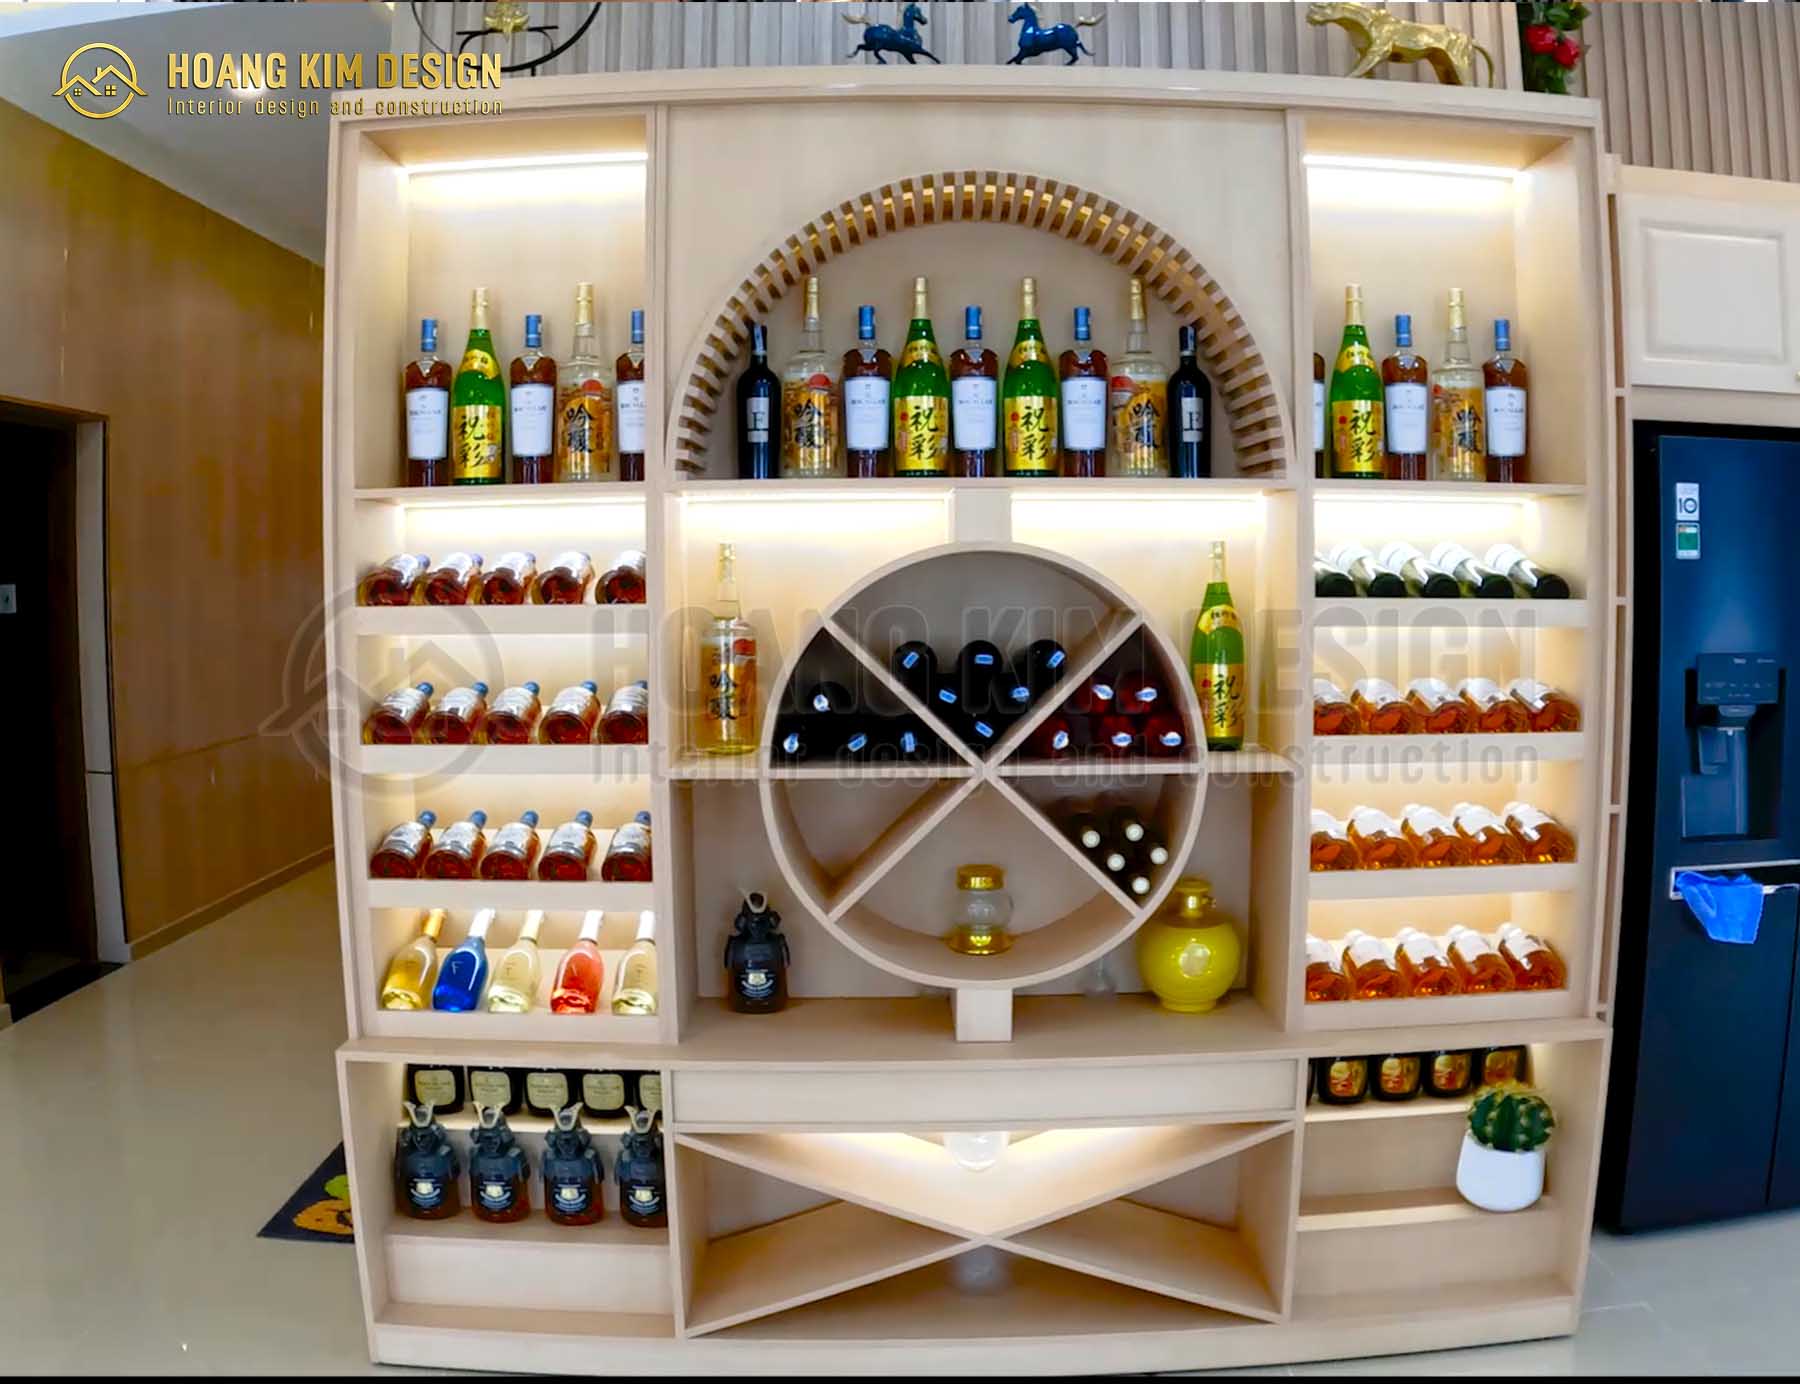 Tủ rượu làm từ gỗ nguyên khối được chúng tôi thiết kế tinh tế, sang trọng, nổi bật với hệ thống đèn led tạo nên một điểm nhấn độc đáo.